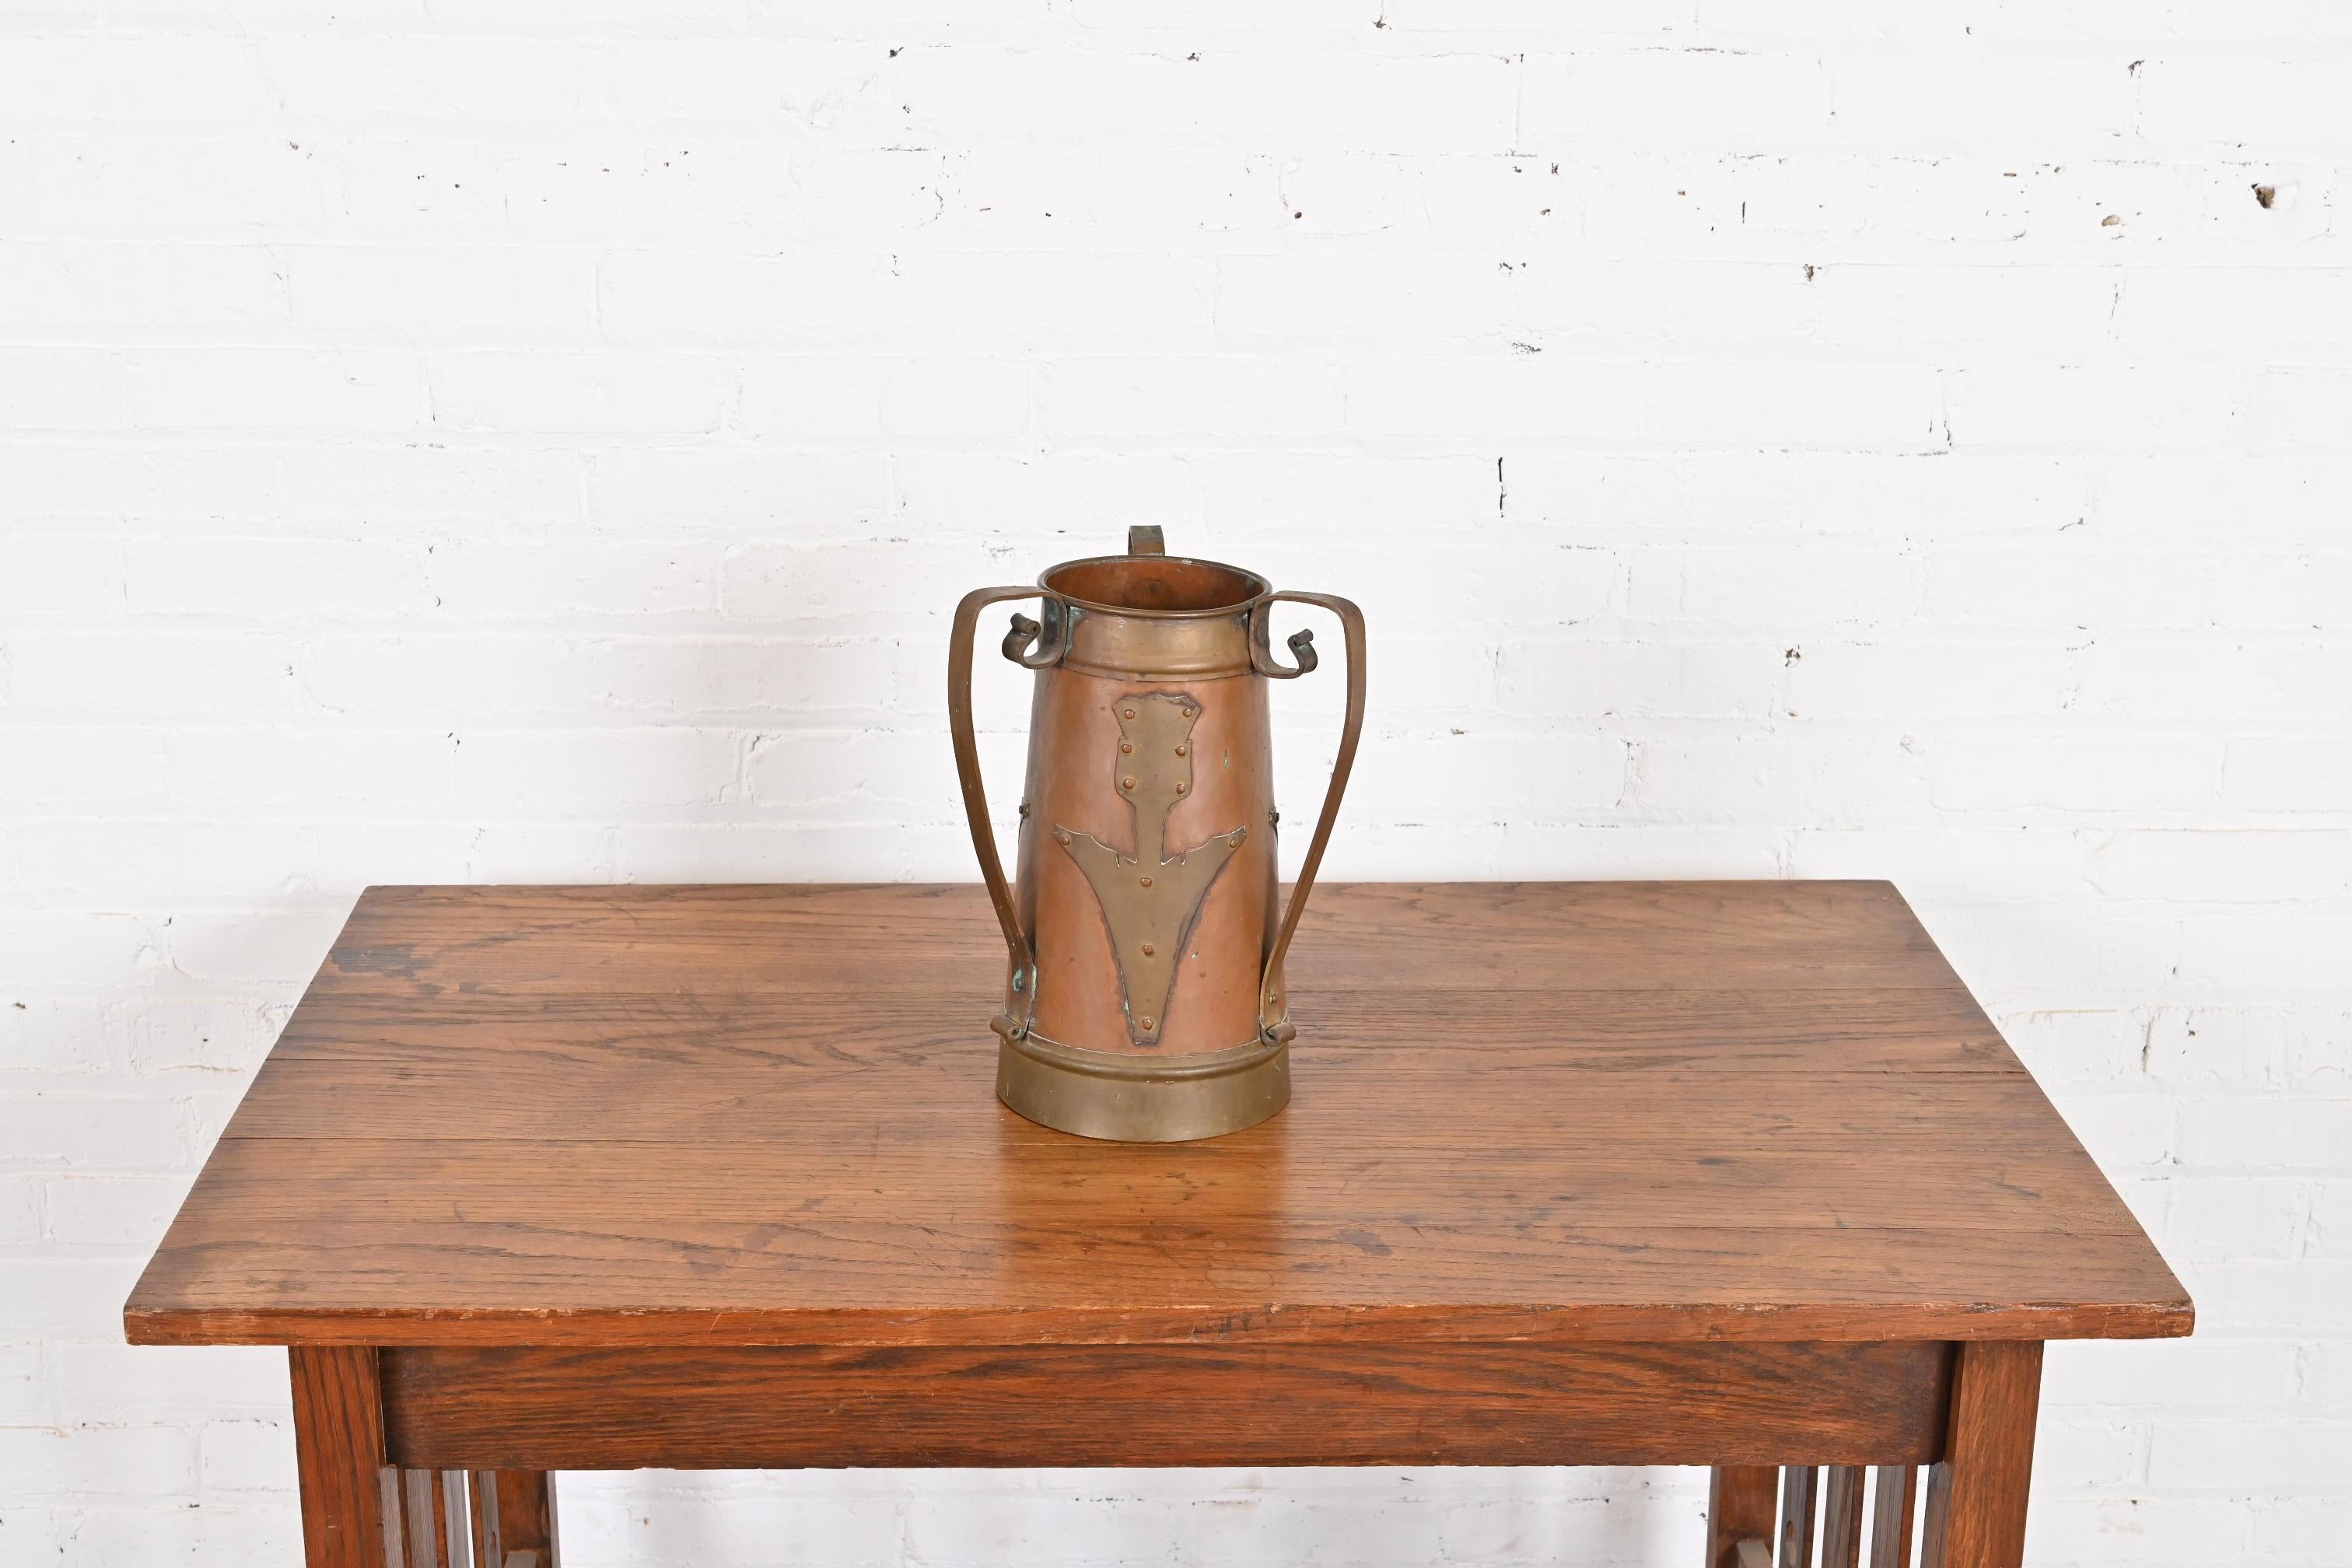 Magnifique vase russe à trois anses en cuivre martelé et laiton avec des fleurs stylisées appliquées, d'époque Arts & Crafts.

Importé et vendu par Stickley Brothers

Vers 1903

Dimensions : 9 